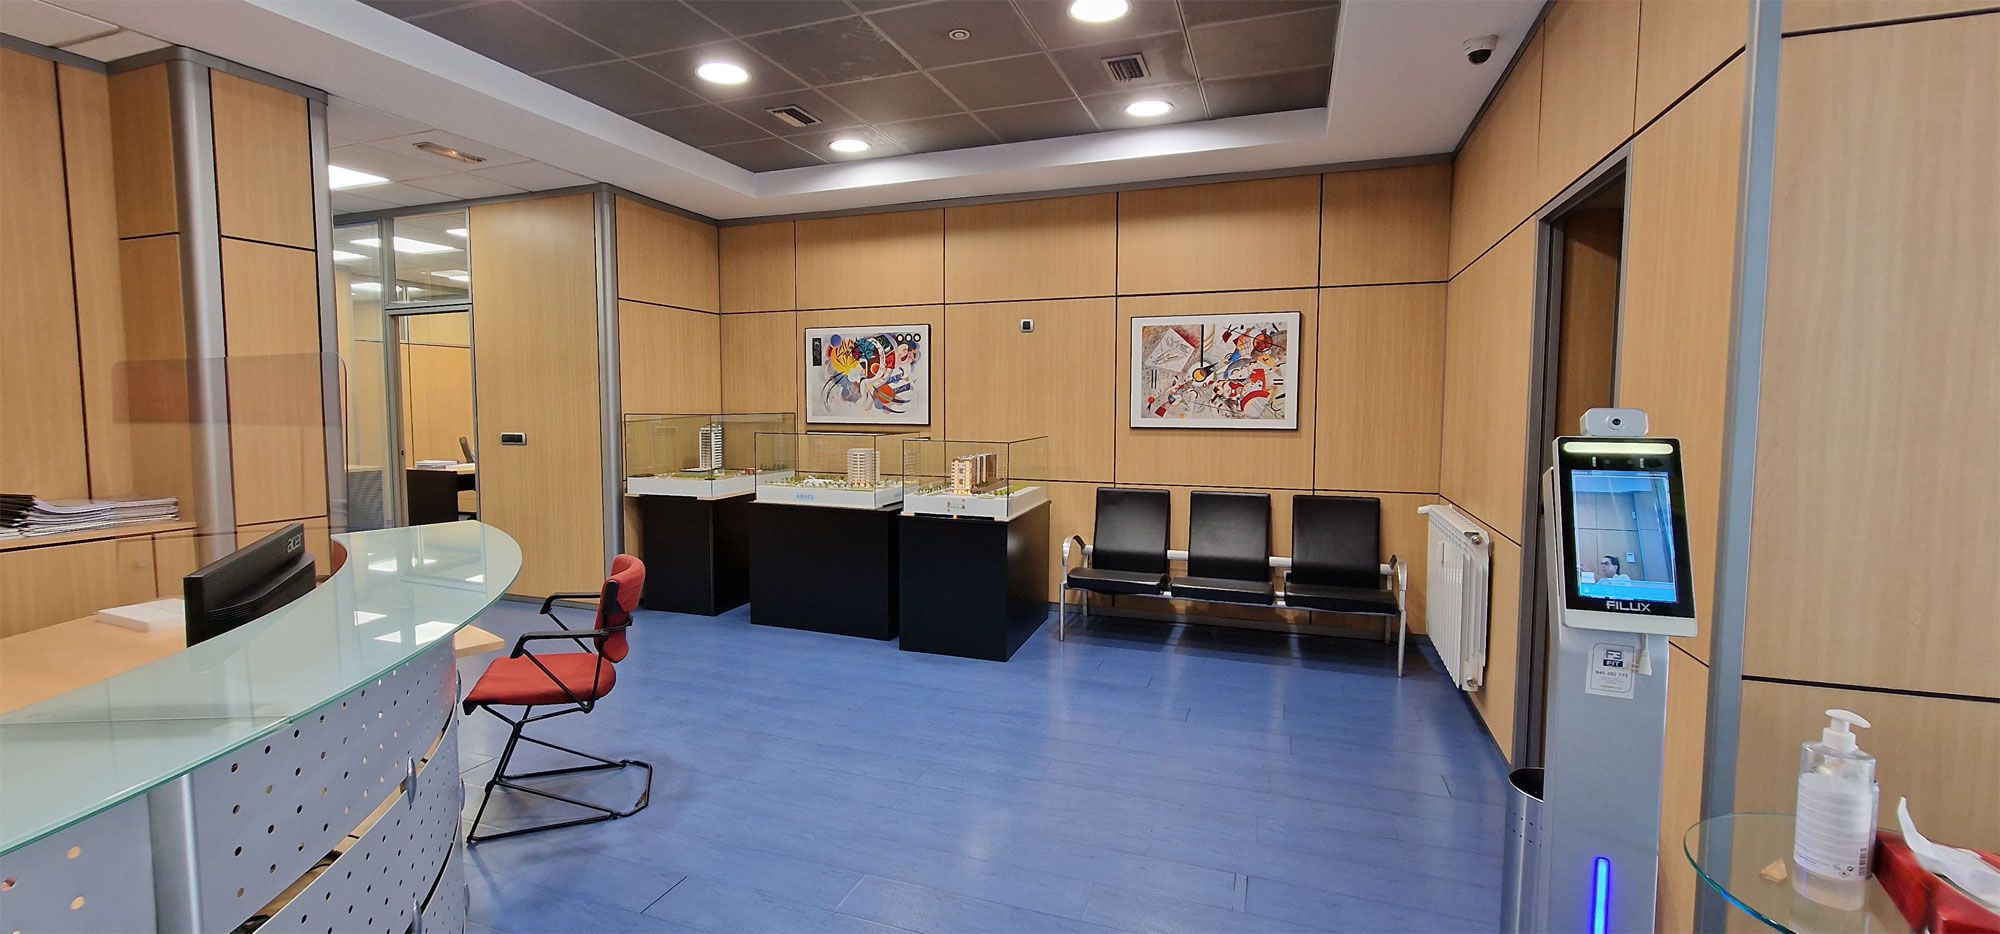 Nuestras oficinas, visítanos  ¡Te esperamos!. Fincas Uleta en Vitoria-Gasteiz